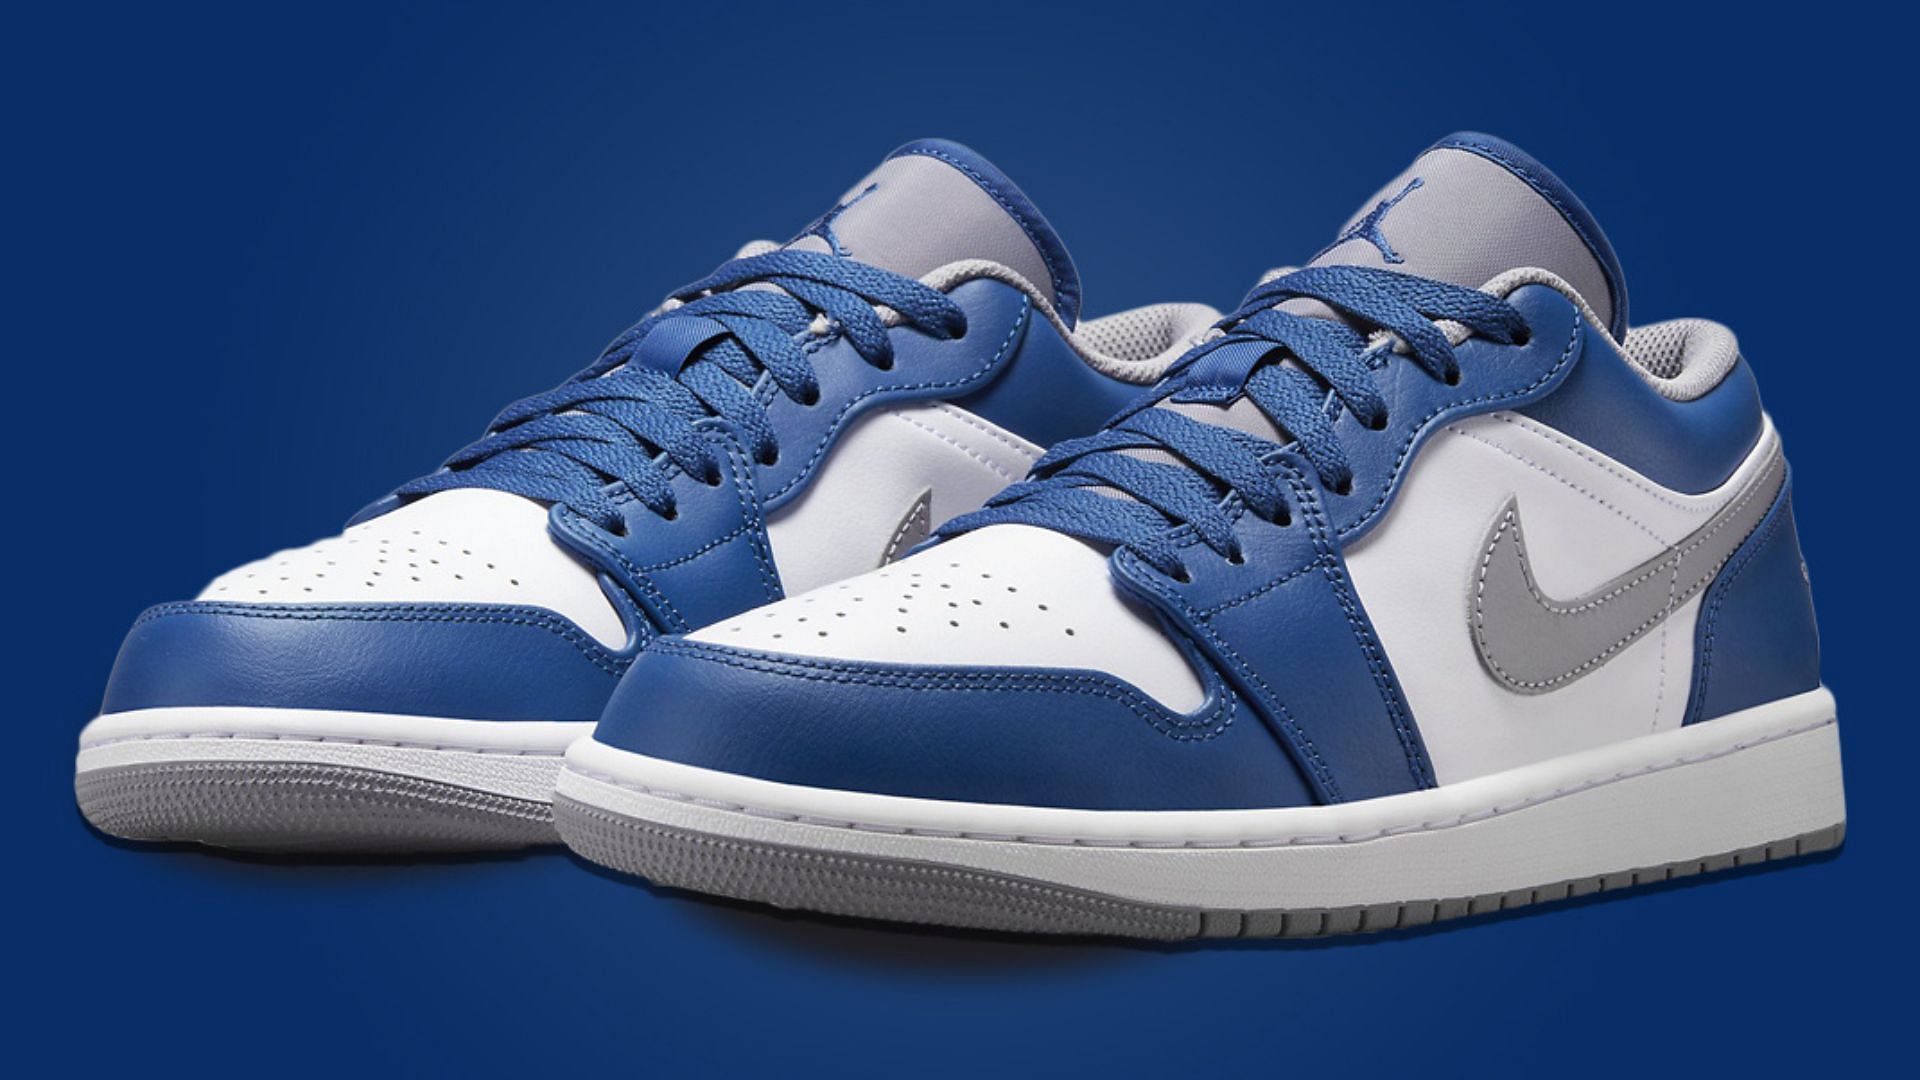 Air Jordan 1 Low True Blue colorway (Image via Nike)